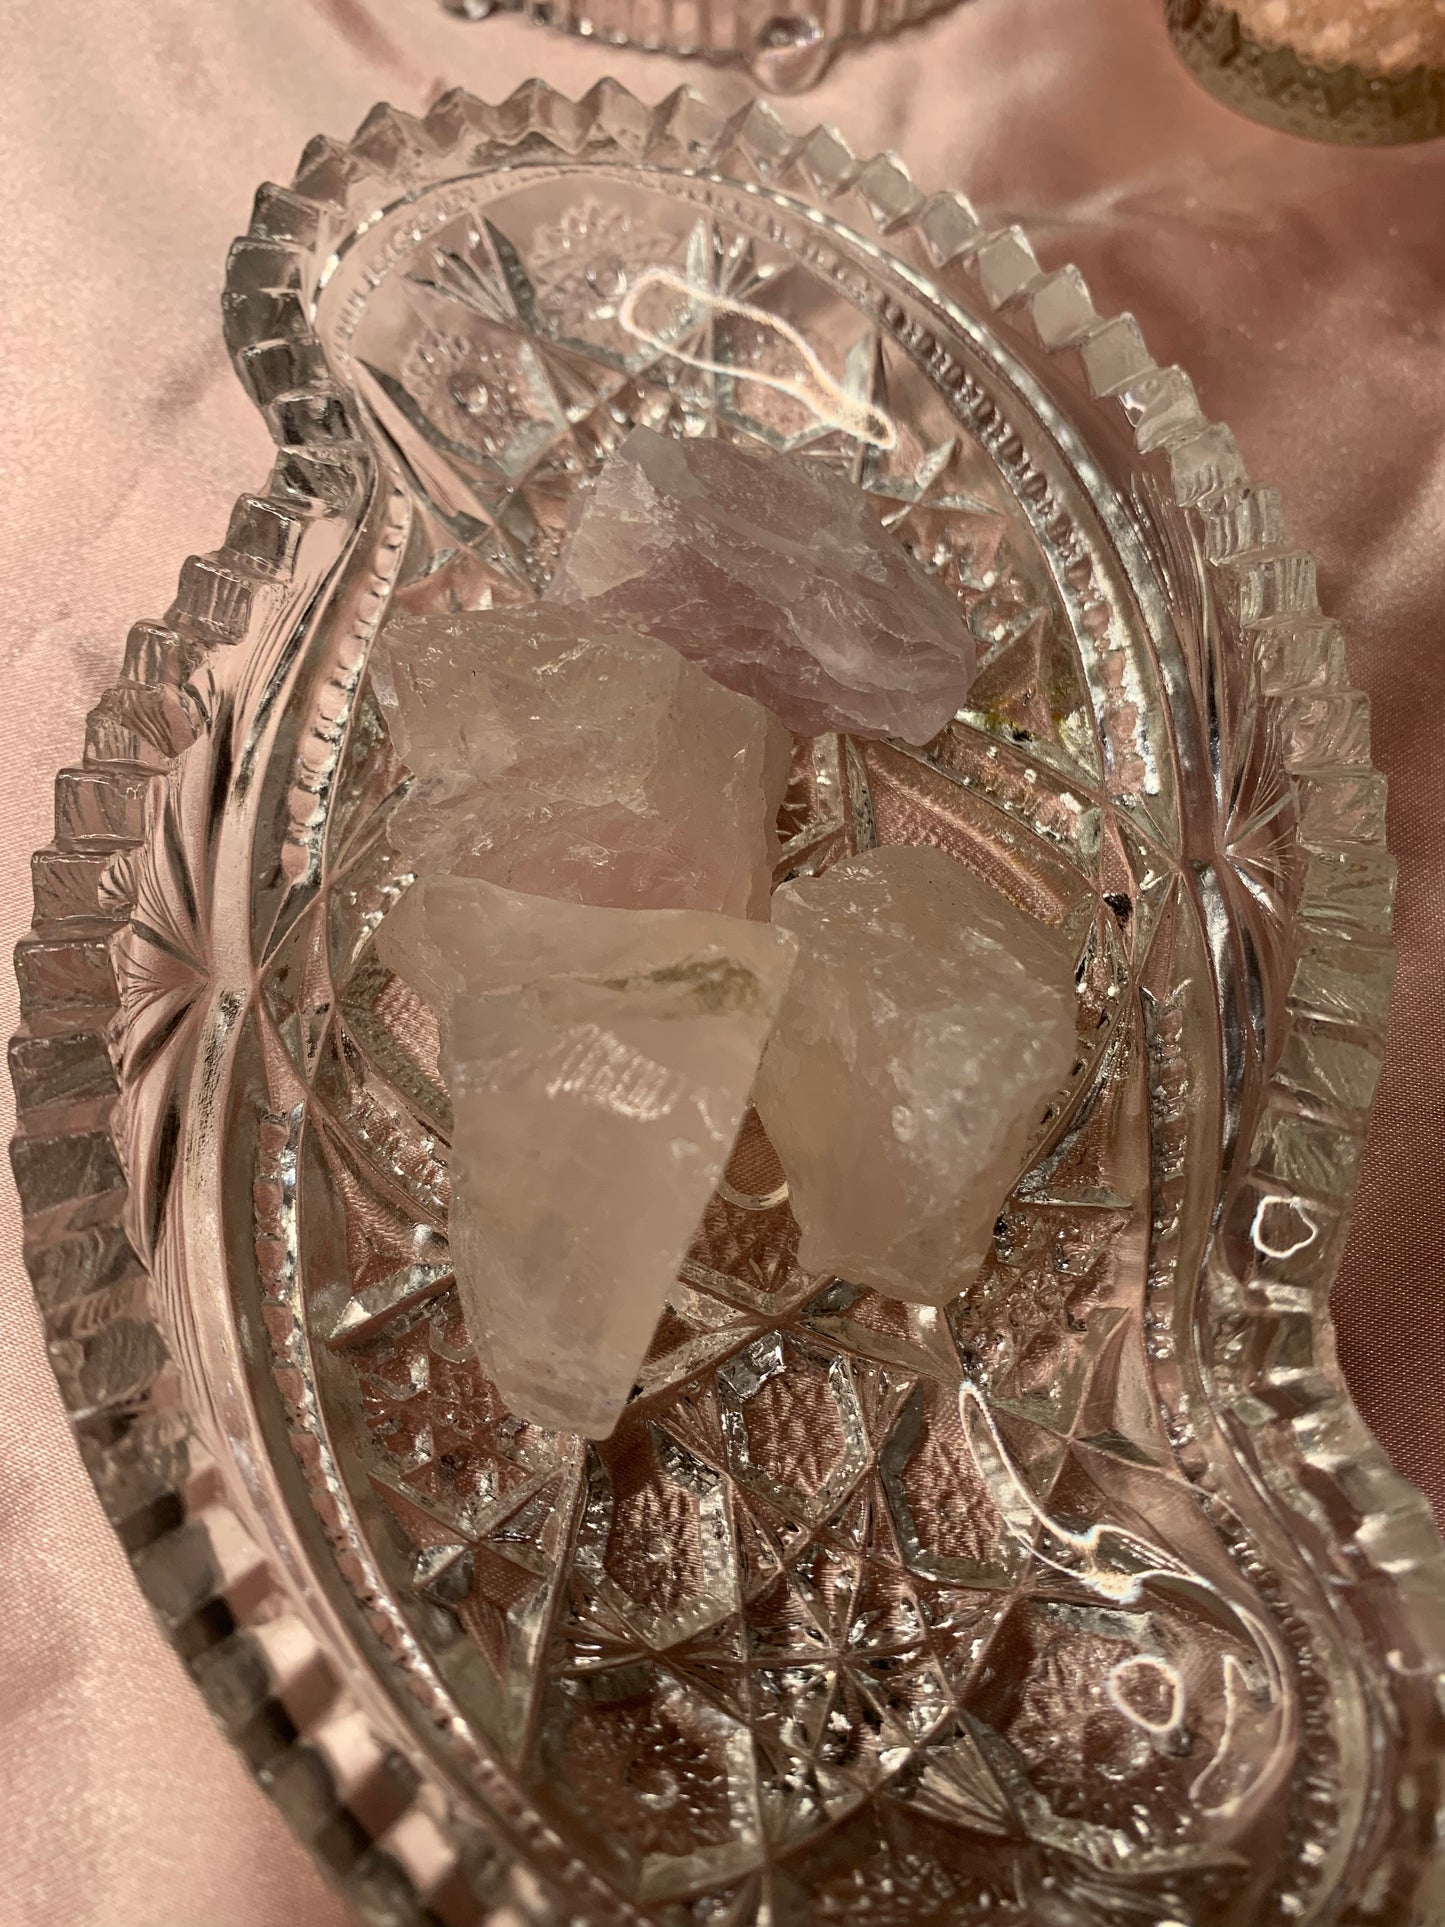 rose quartz raw pieces